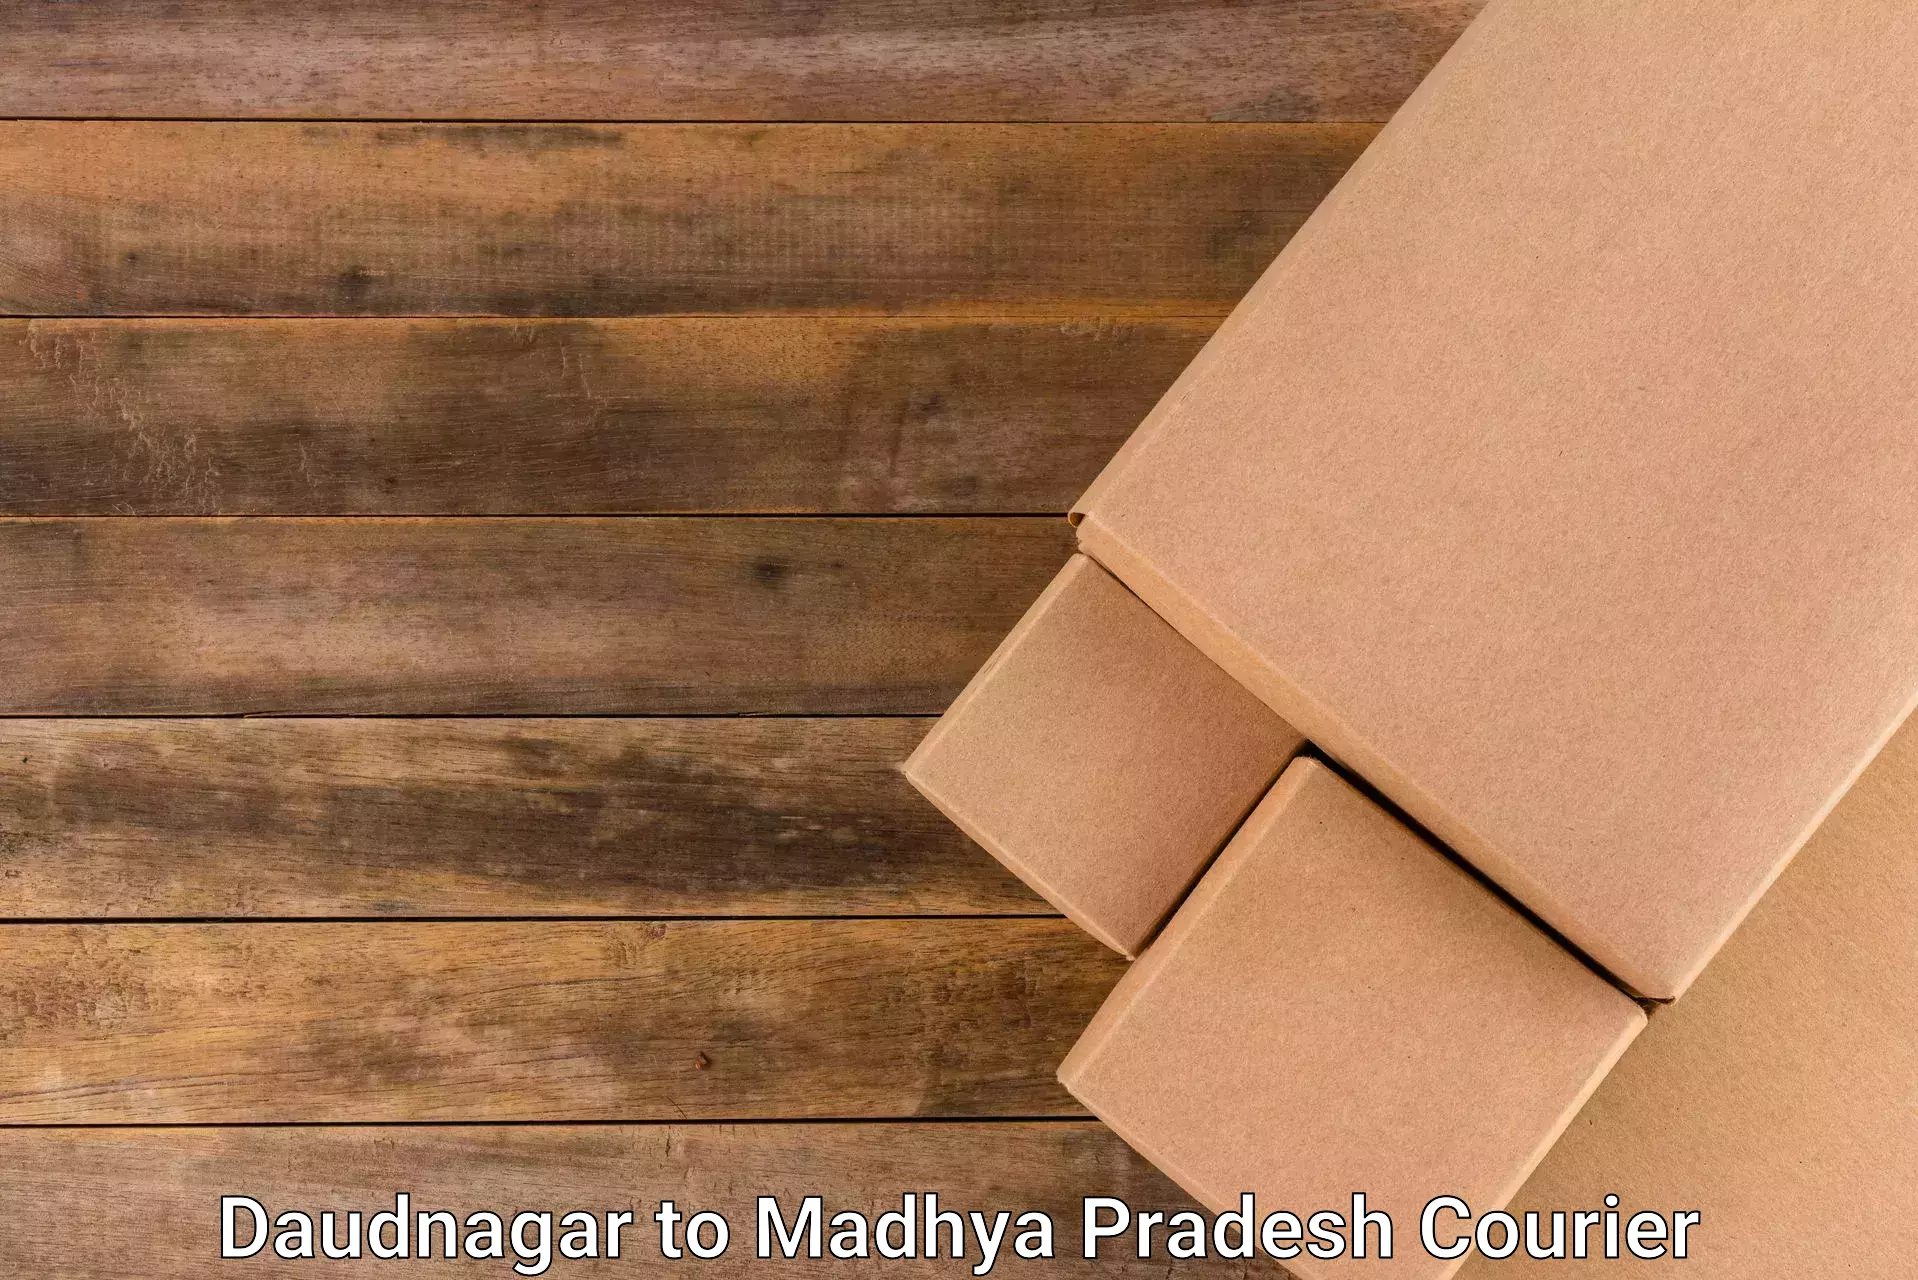 Express package handling Daudnagar to Madhya Pradesh